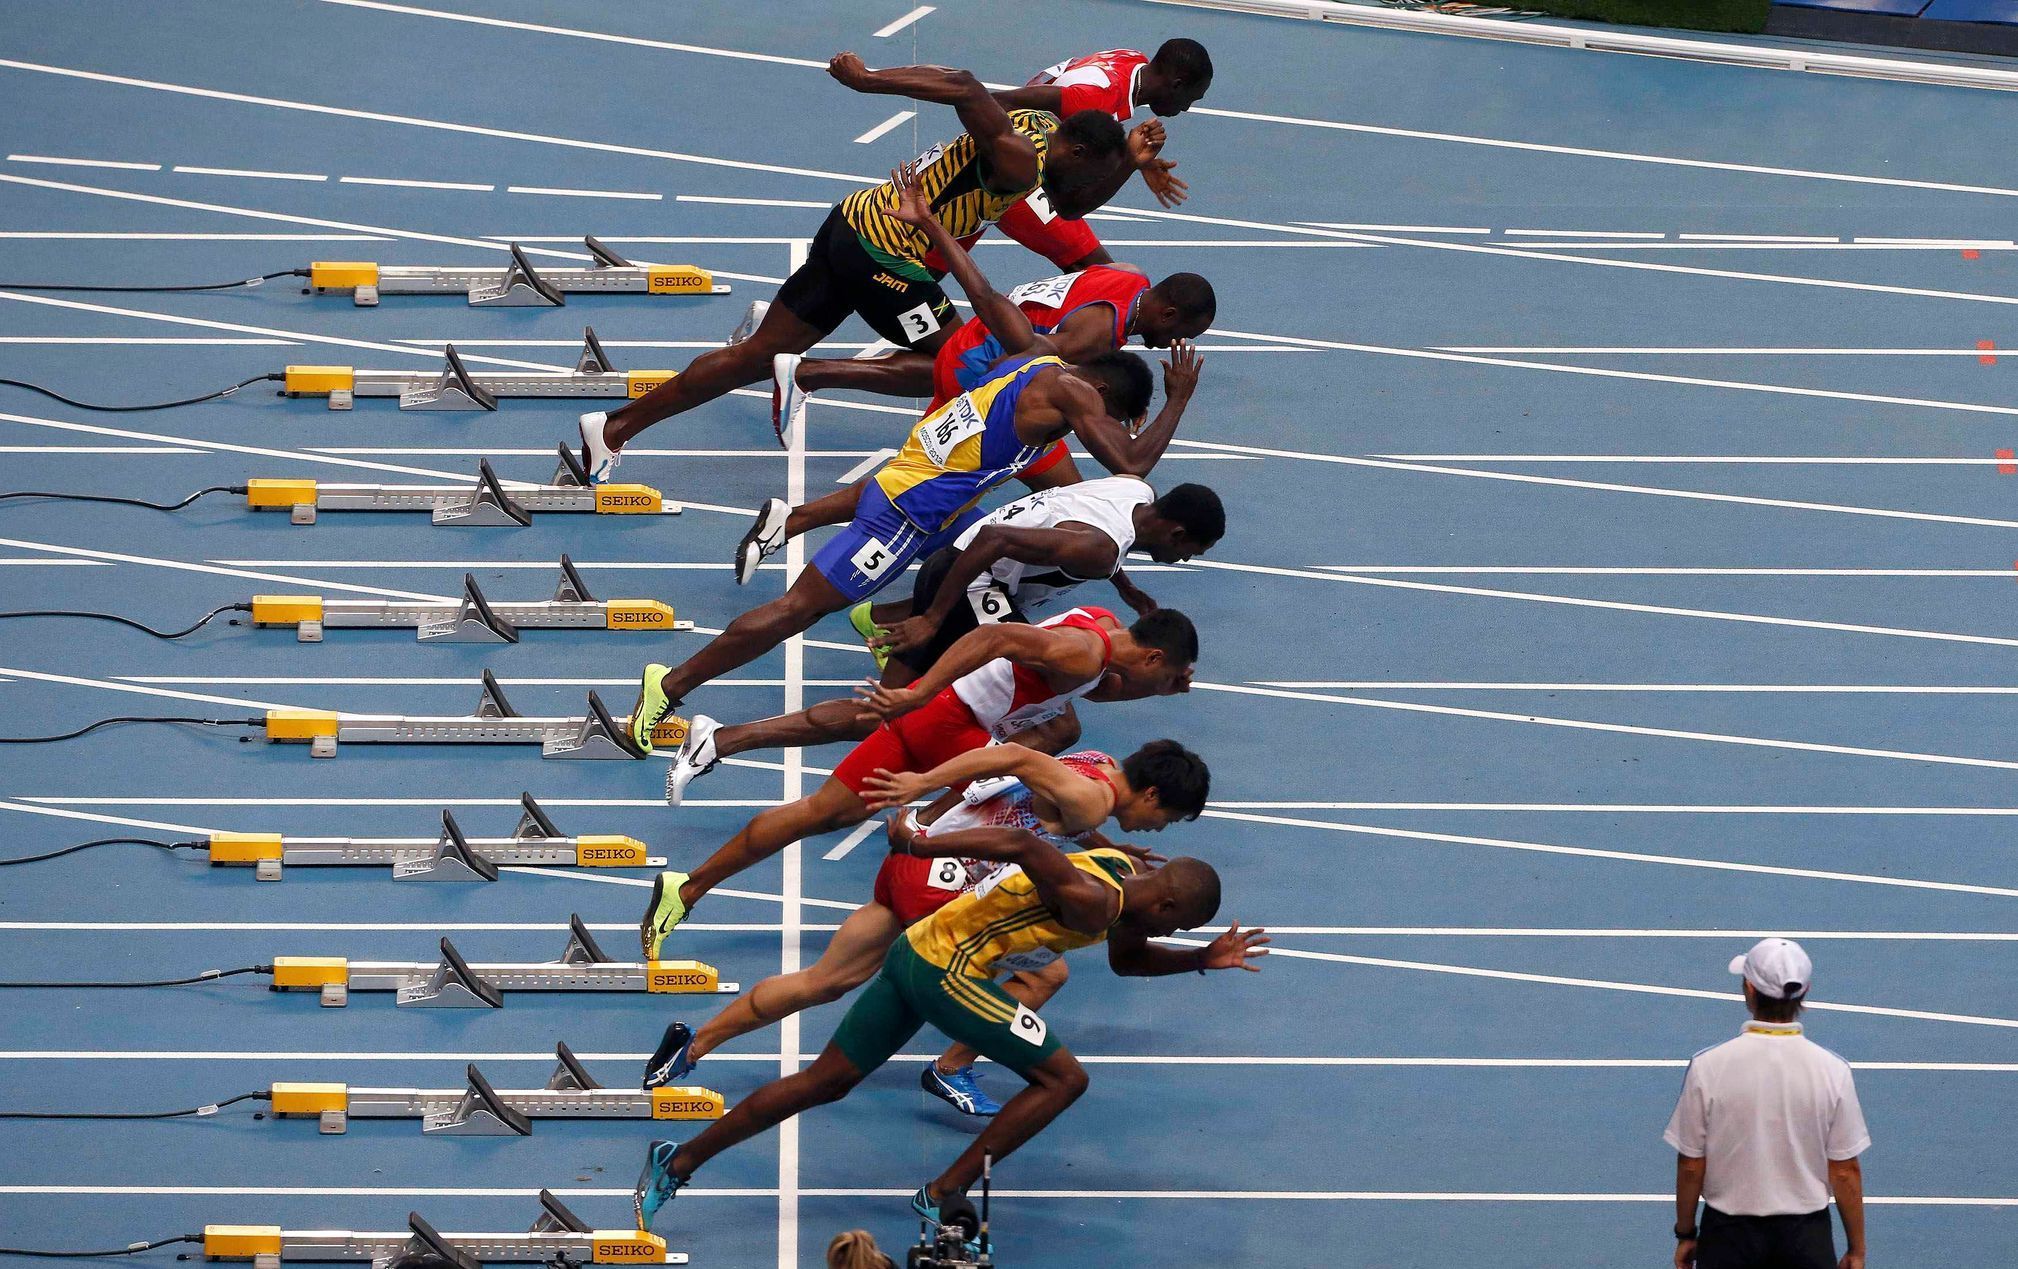 MS v atletice 2013, 100 m - rozběh: první ulitý start, druhý shora Usain Bolt, pod ním Kemar Hyman